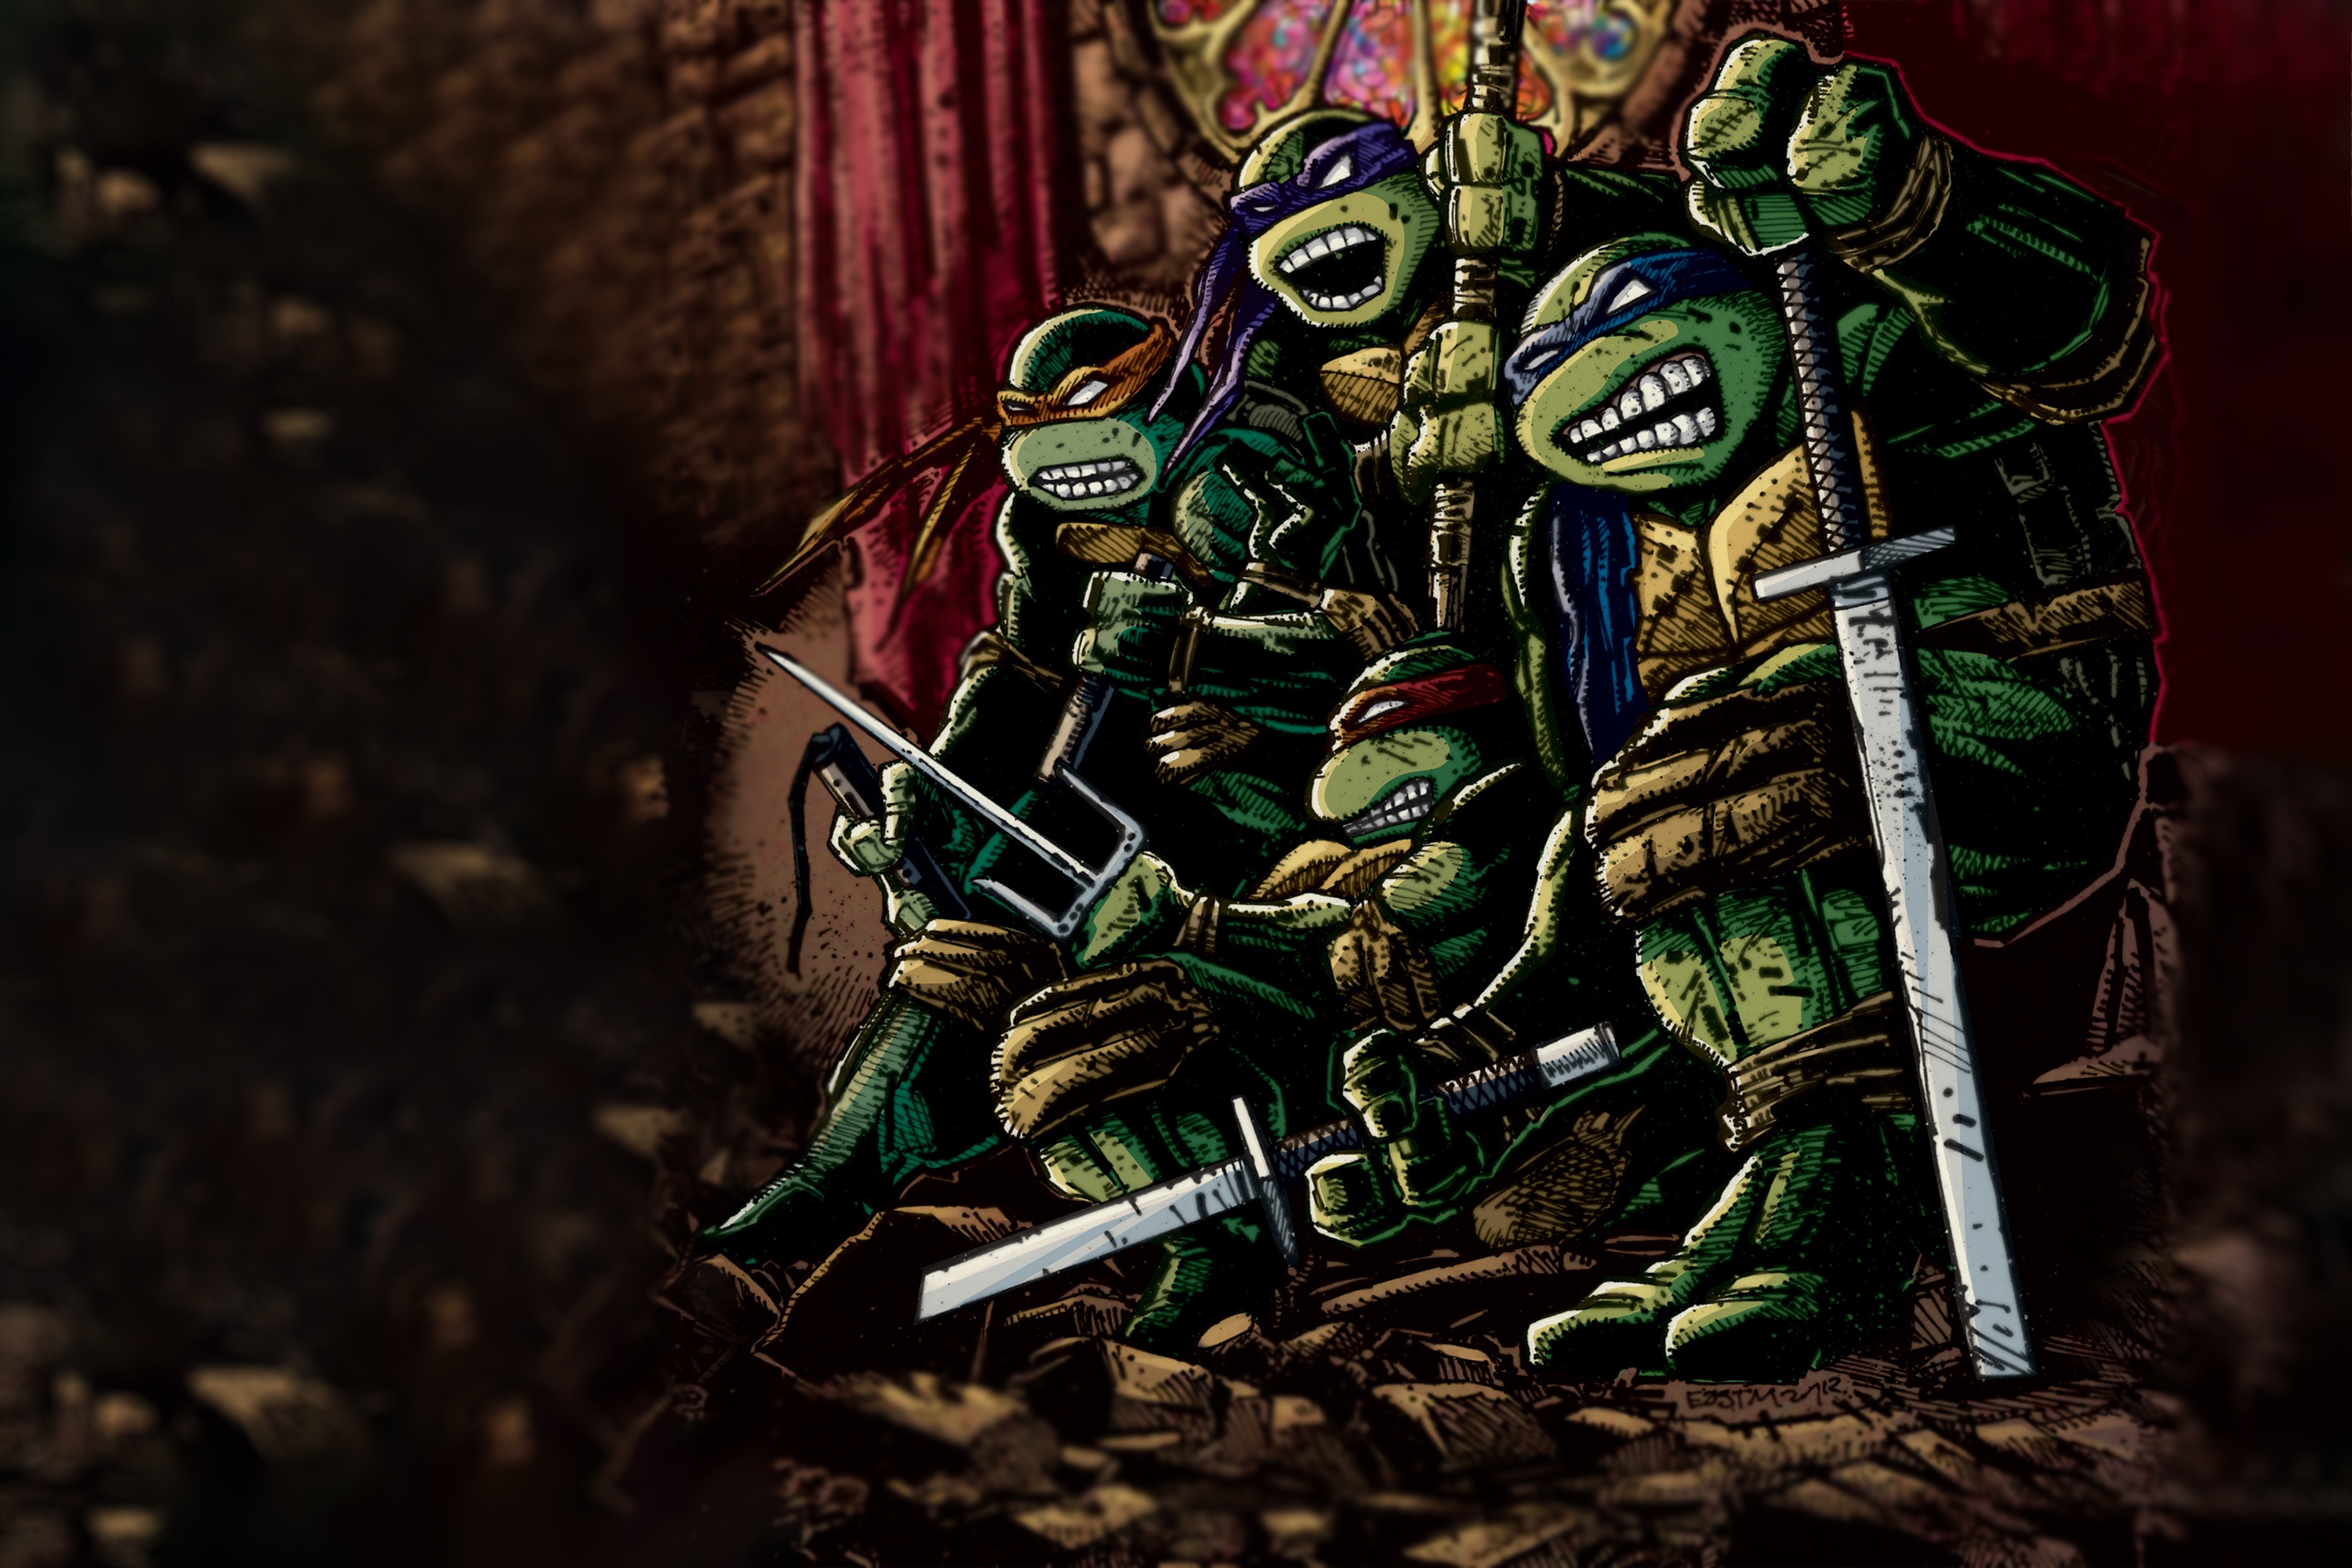 Download mobile wallpaper Teenage Mutant Ninja Turtles, Comics for free.